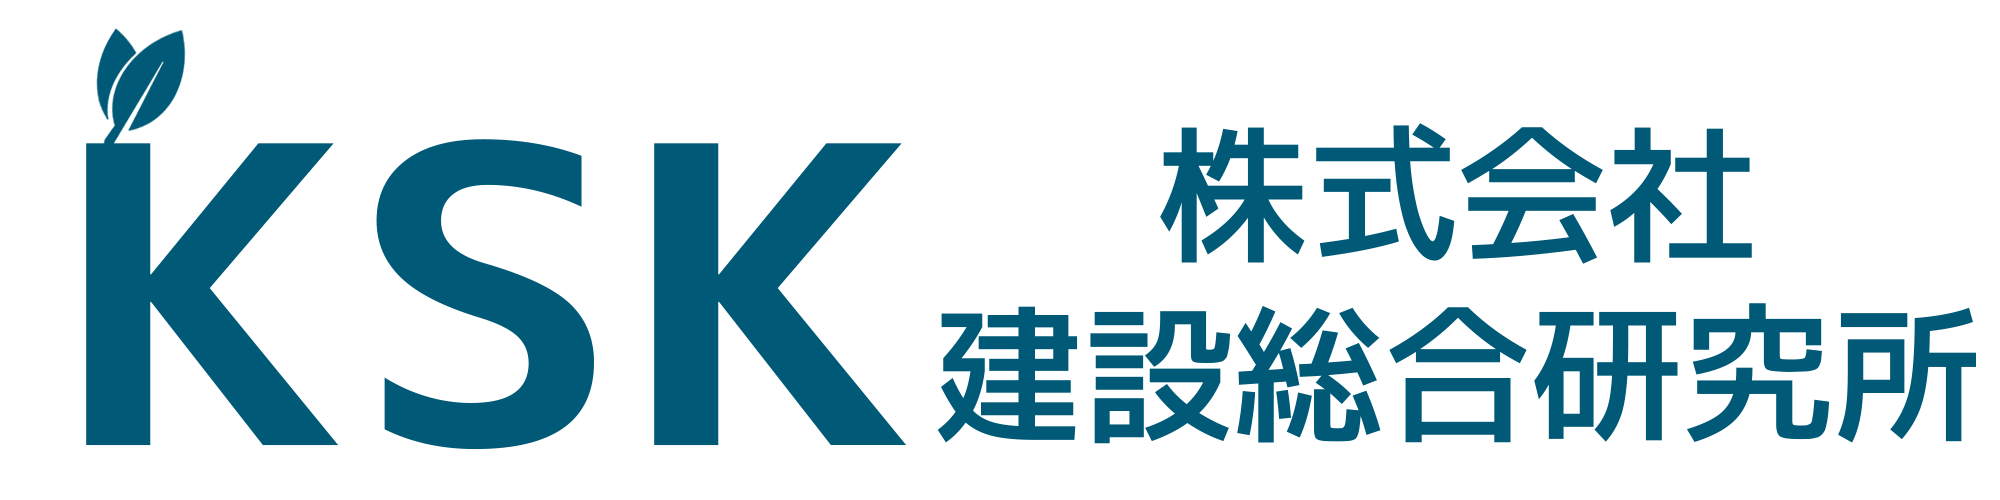 株式会社建設総合研究所ロゴ